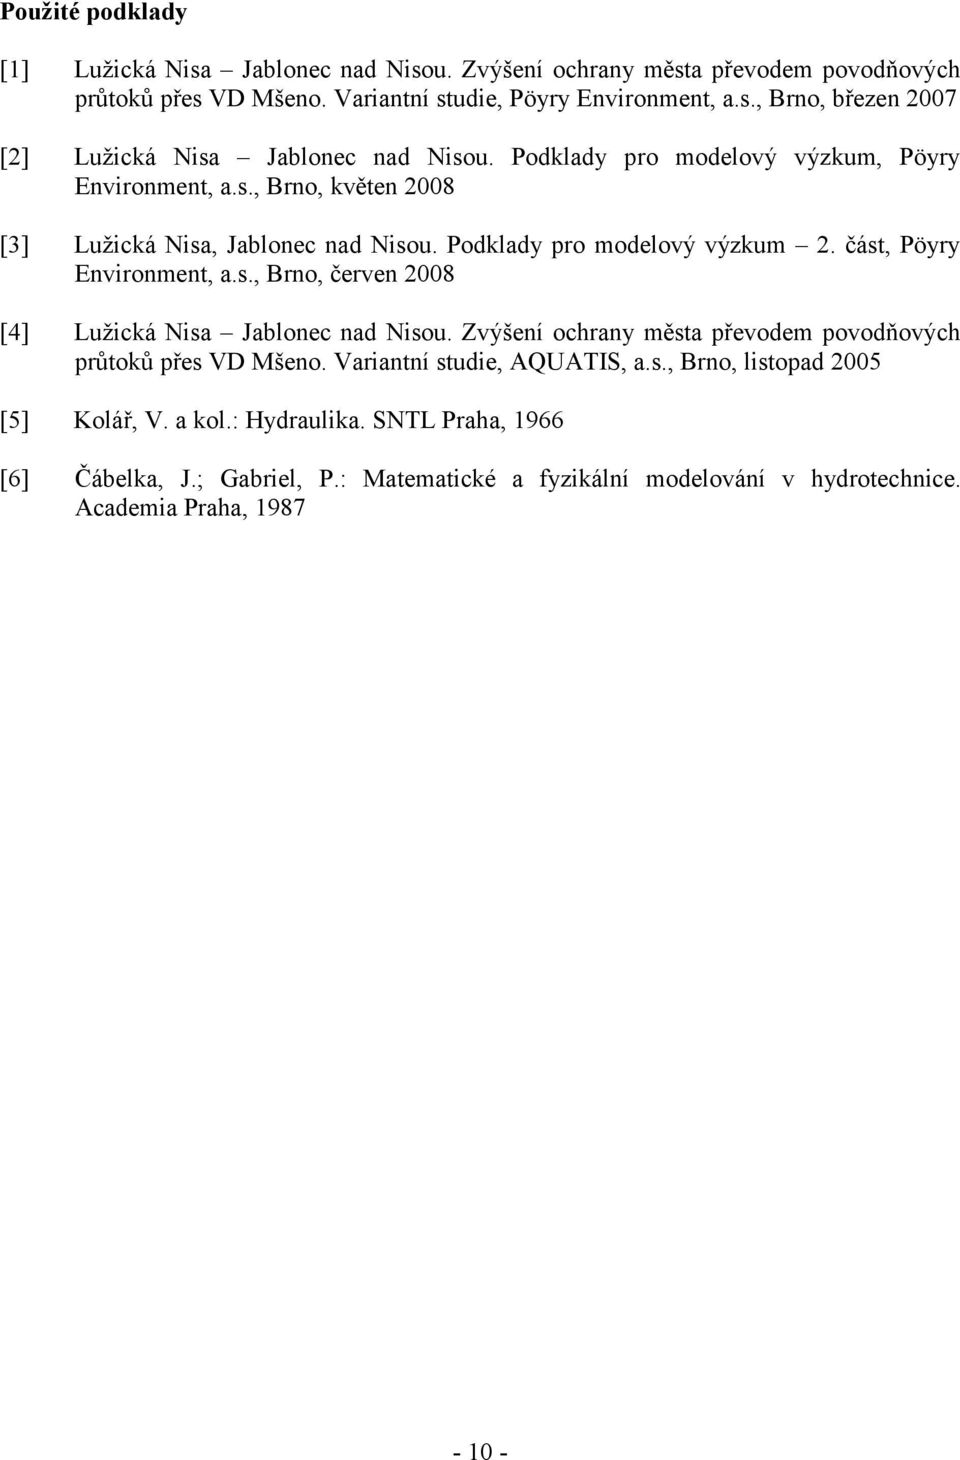 Zvýšení ochrany města převodem povodňových průtoků přes VD Mšeno. Variantní studie, AQUATIS, a.s., Brno, listopad 2005 [5] Kolář, V. a kol.: Hydraulika.